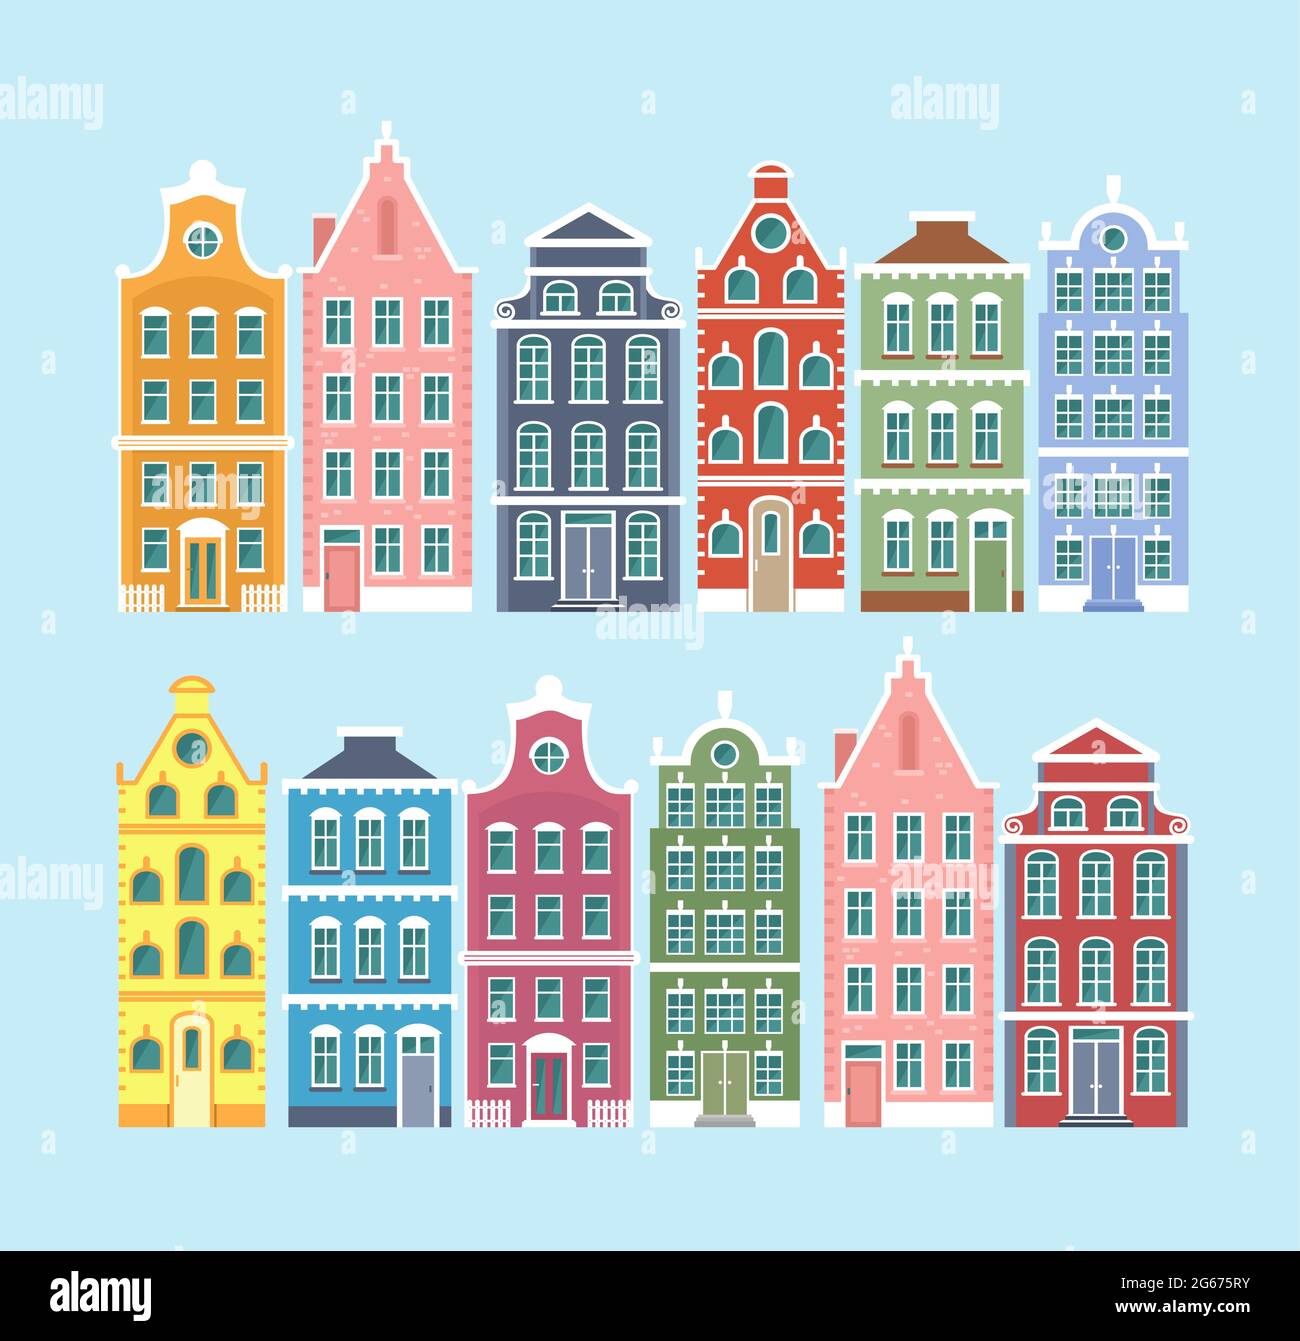 Ensemble d'illustrations vectorielles de maisons colorées de style ancien européen isolées sur fond bleu clair. Maisons de style néerlandais, pays-Bas mignons dans l'appartement Illustration de Vecteur